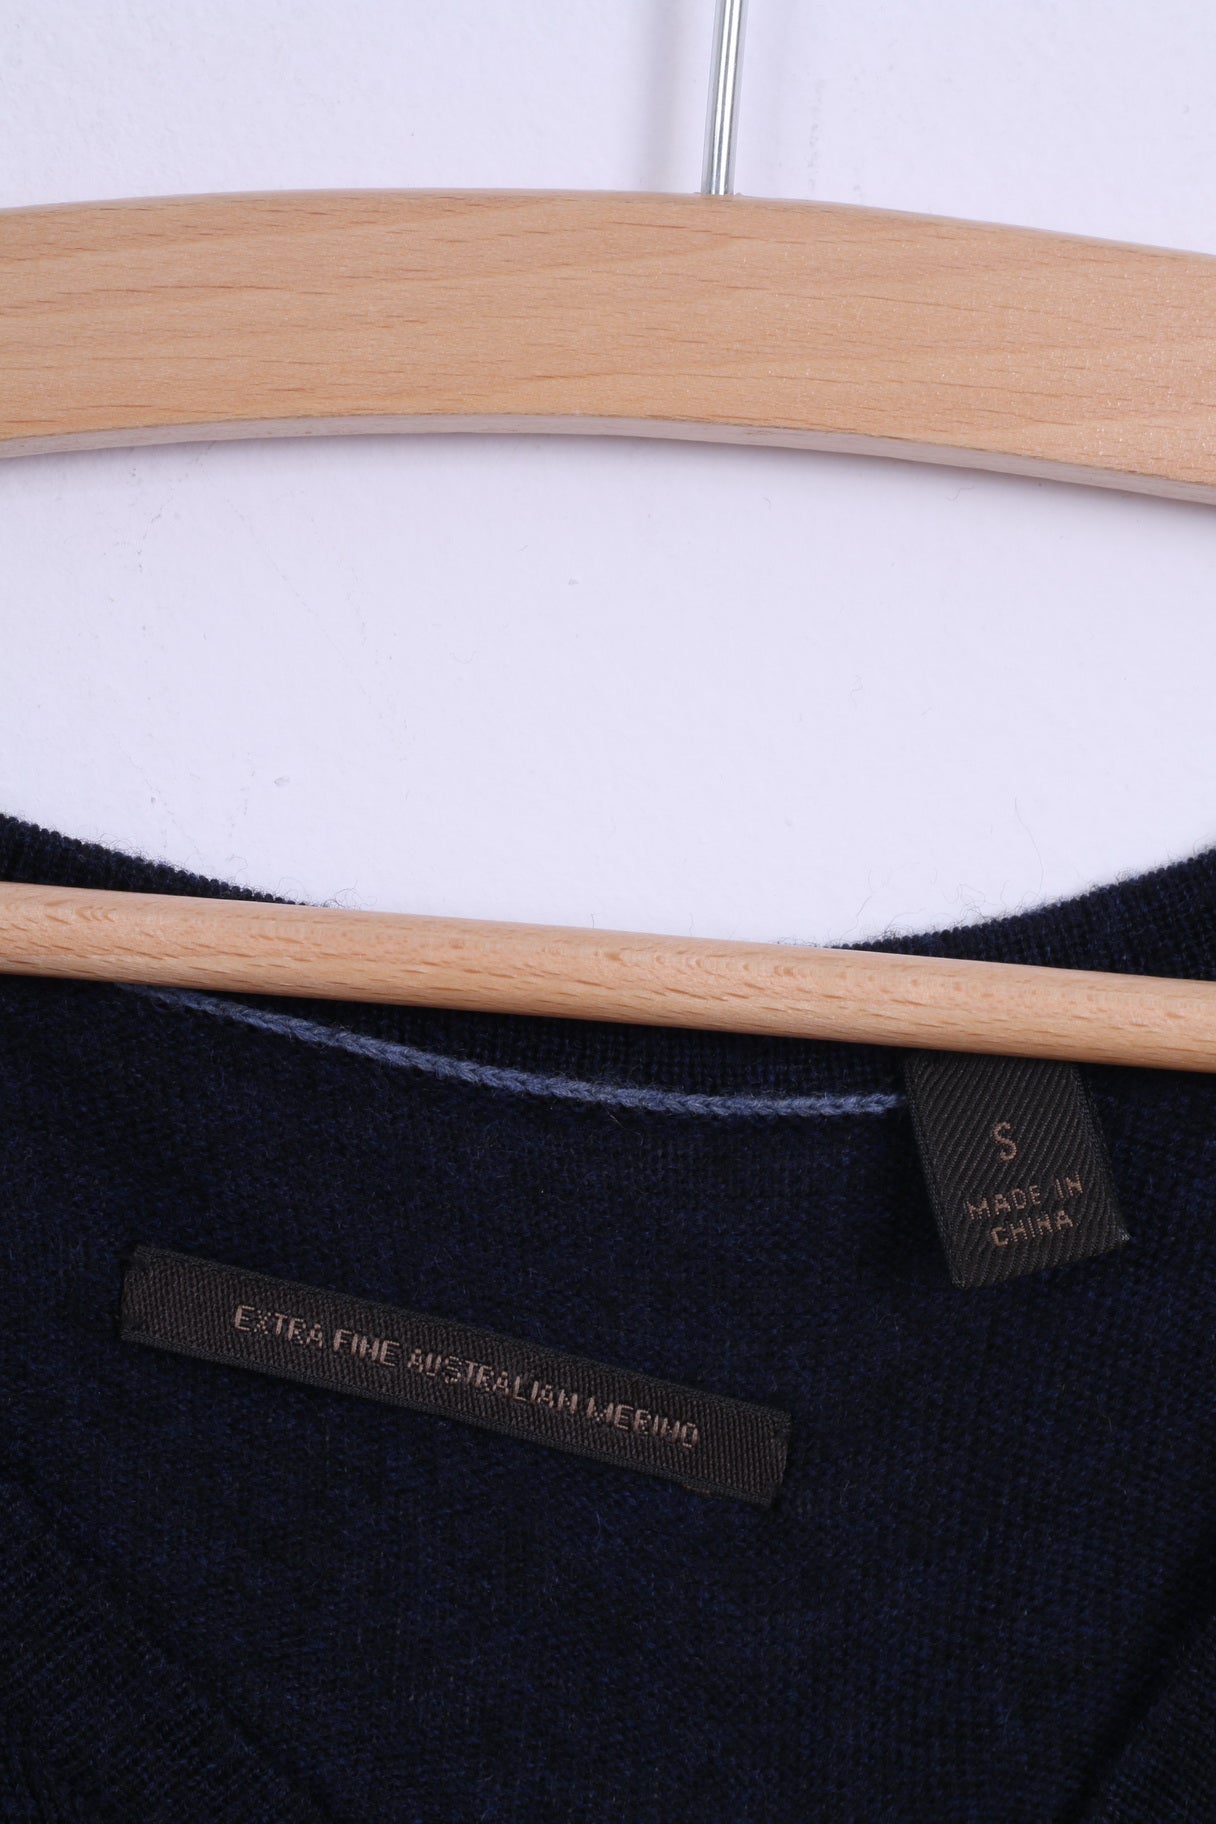 CR Clothing Australia Maglione da uomo S in lana merino blu scuro con scollo a V. Maglione leggero